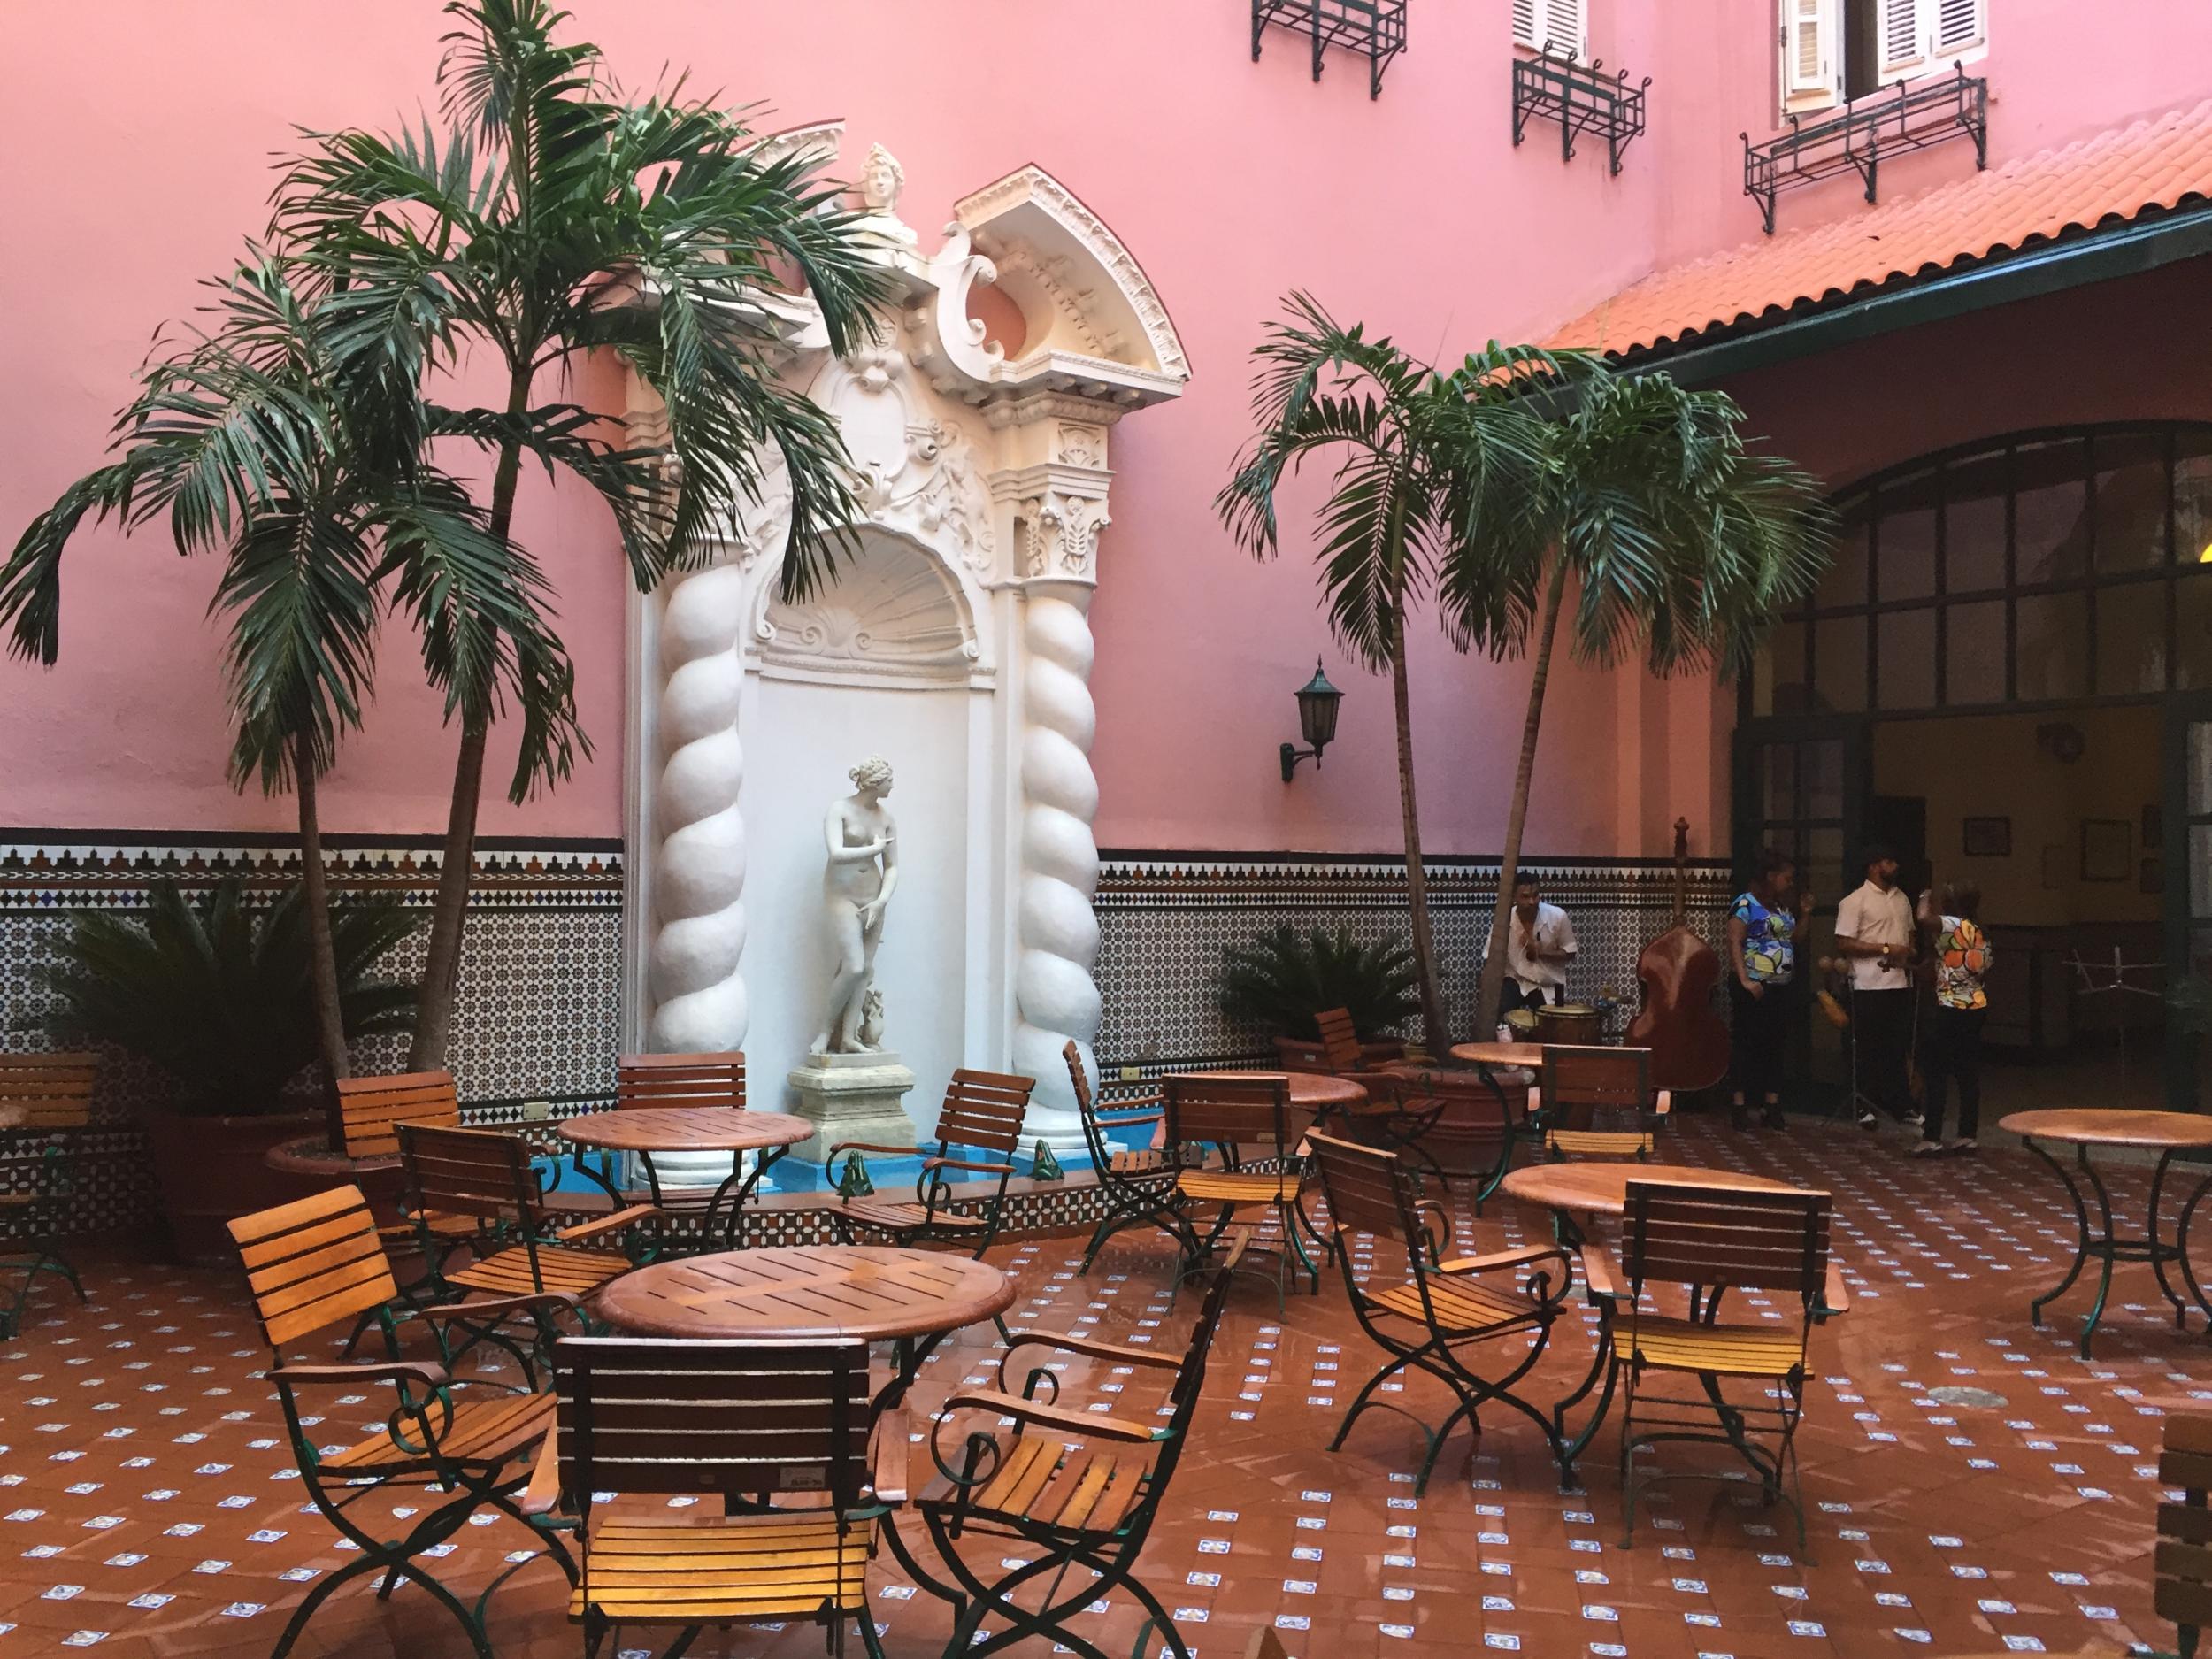 The Moorish-style Sevilla hotel, where Hemingway laid his head